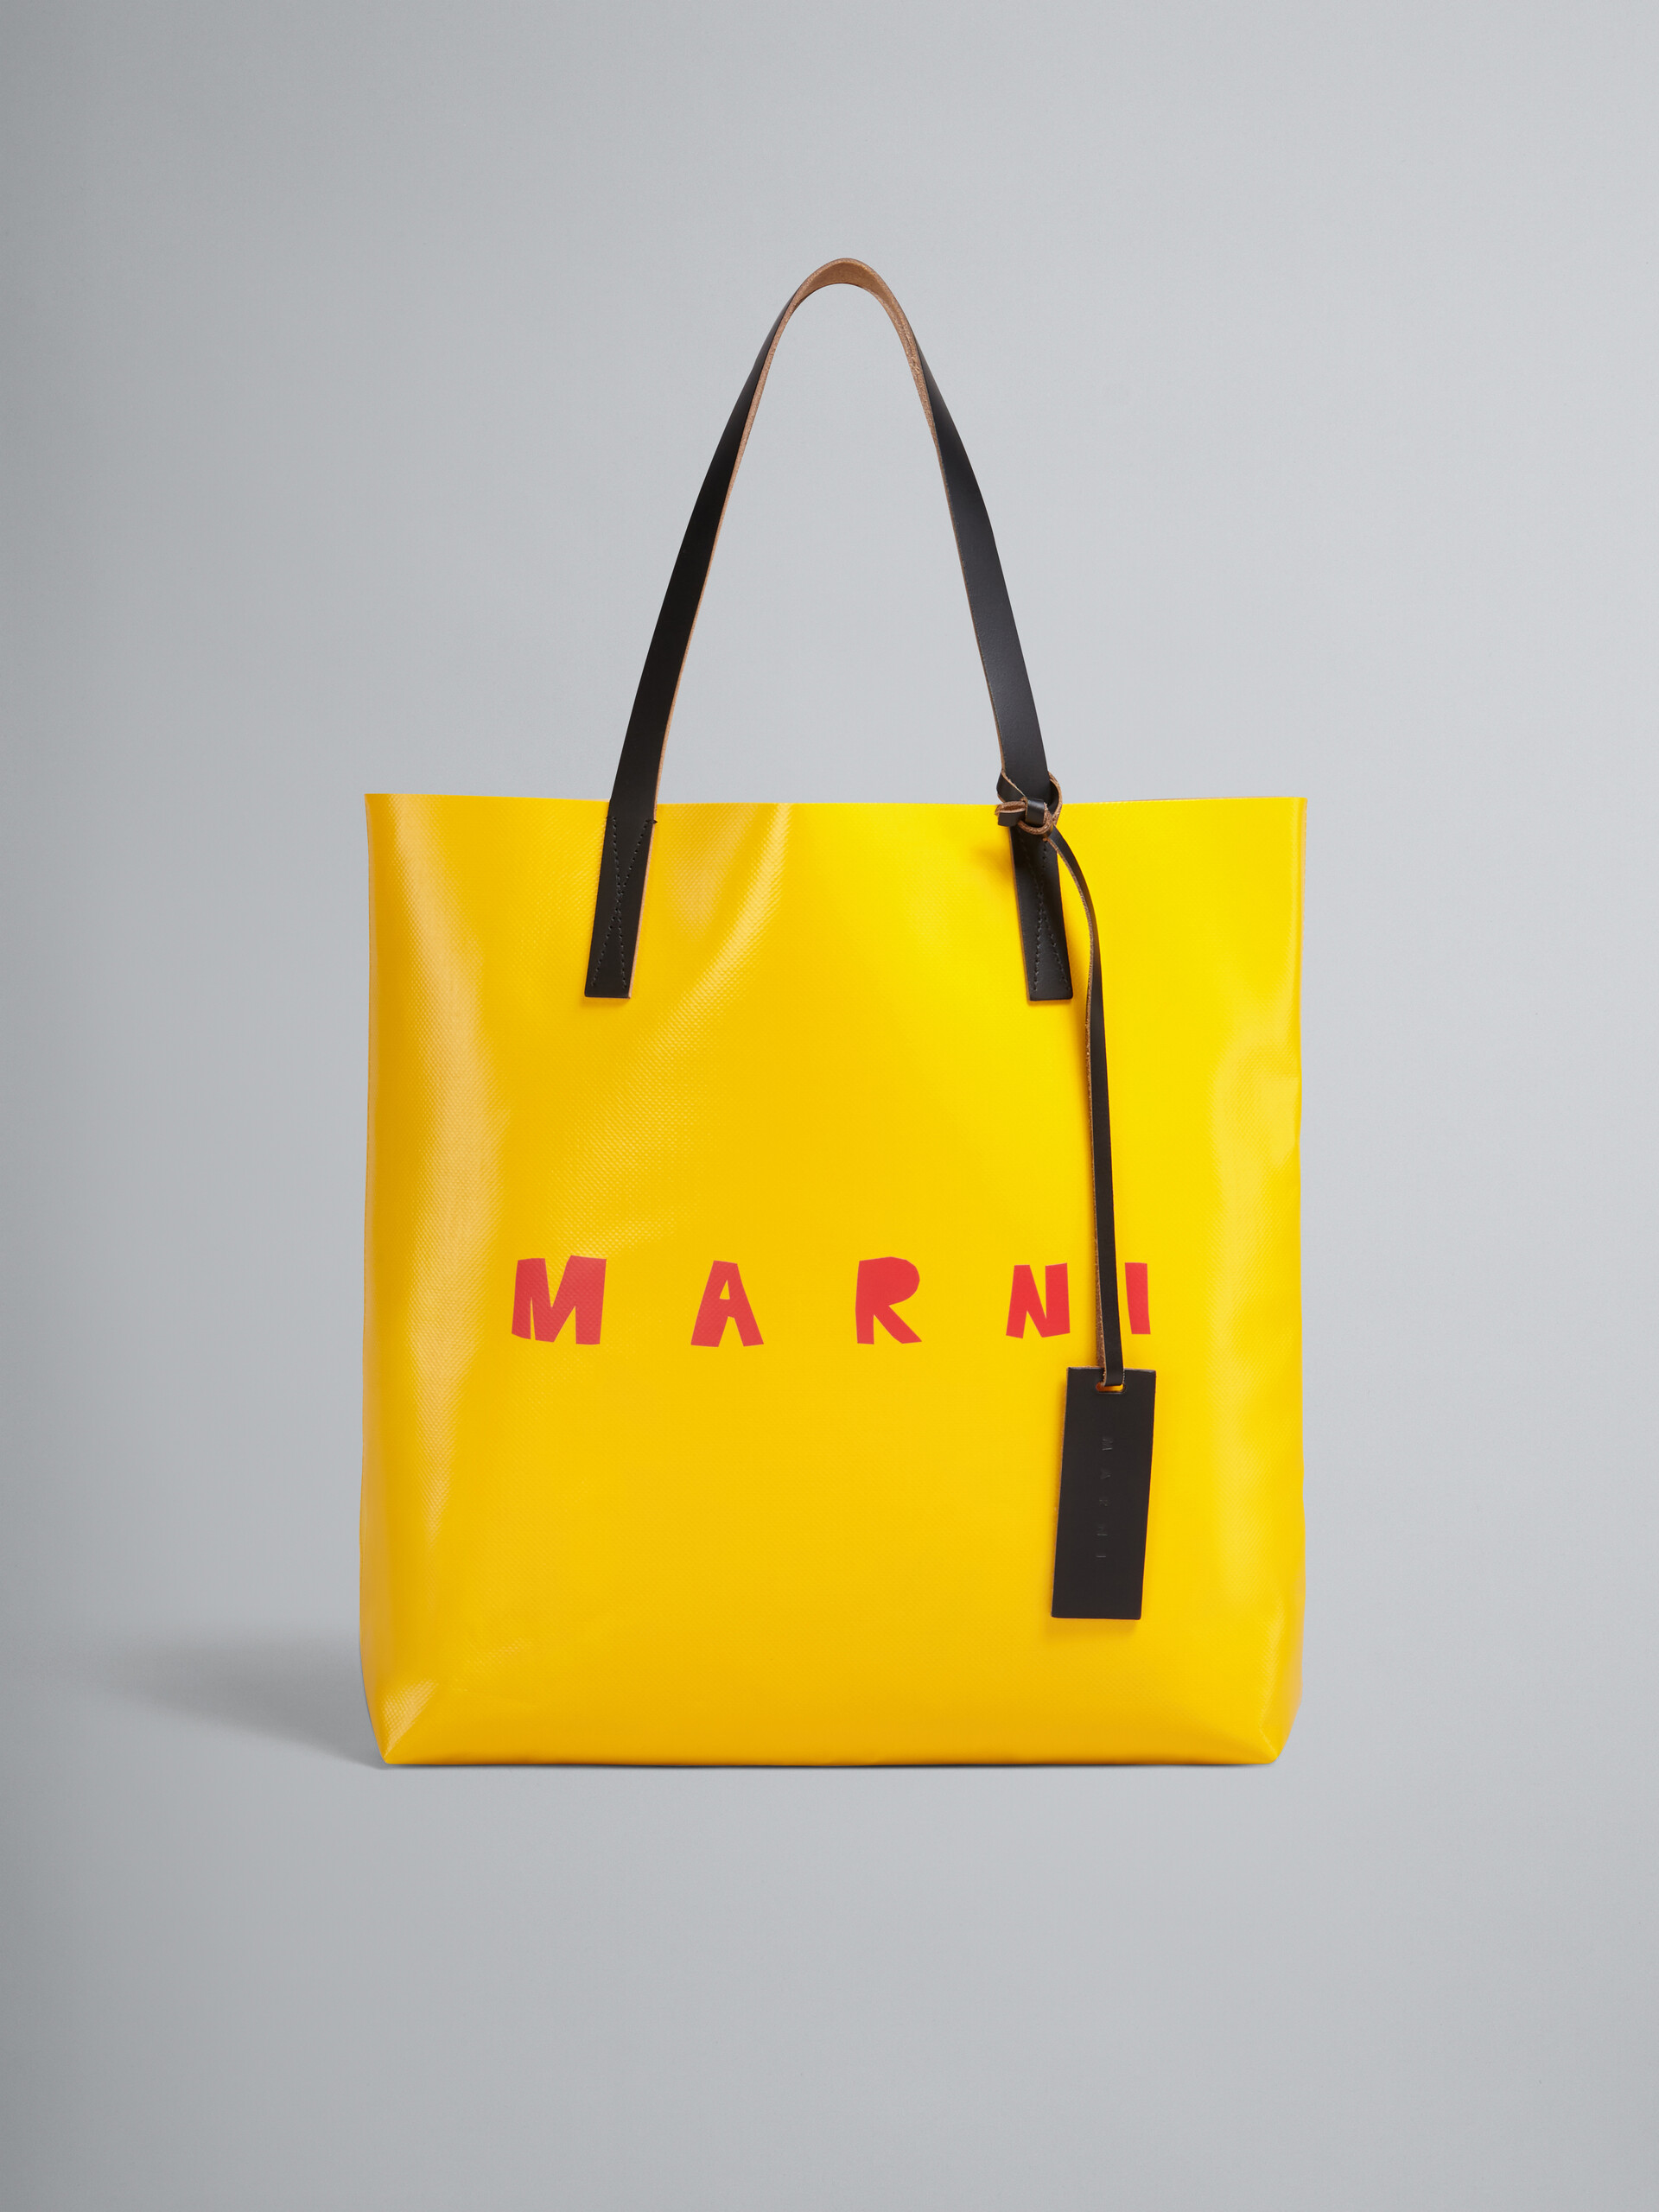 マルニの30代におすすめのバッグはショッピングバッグです